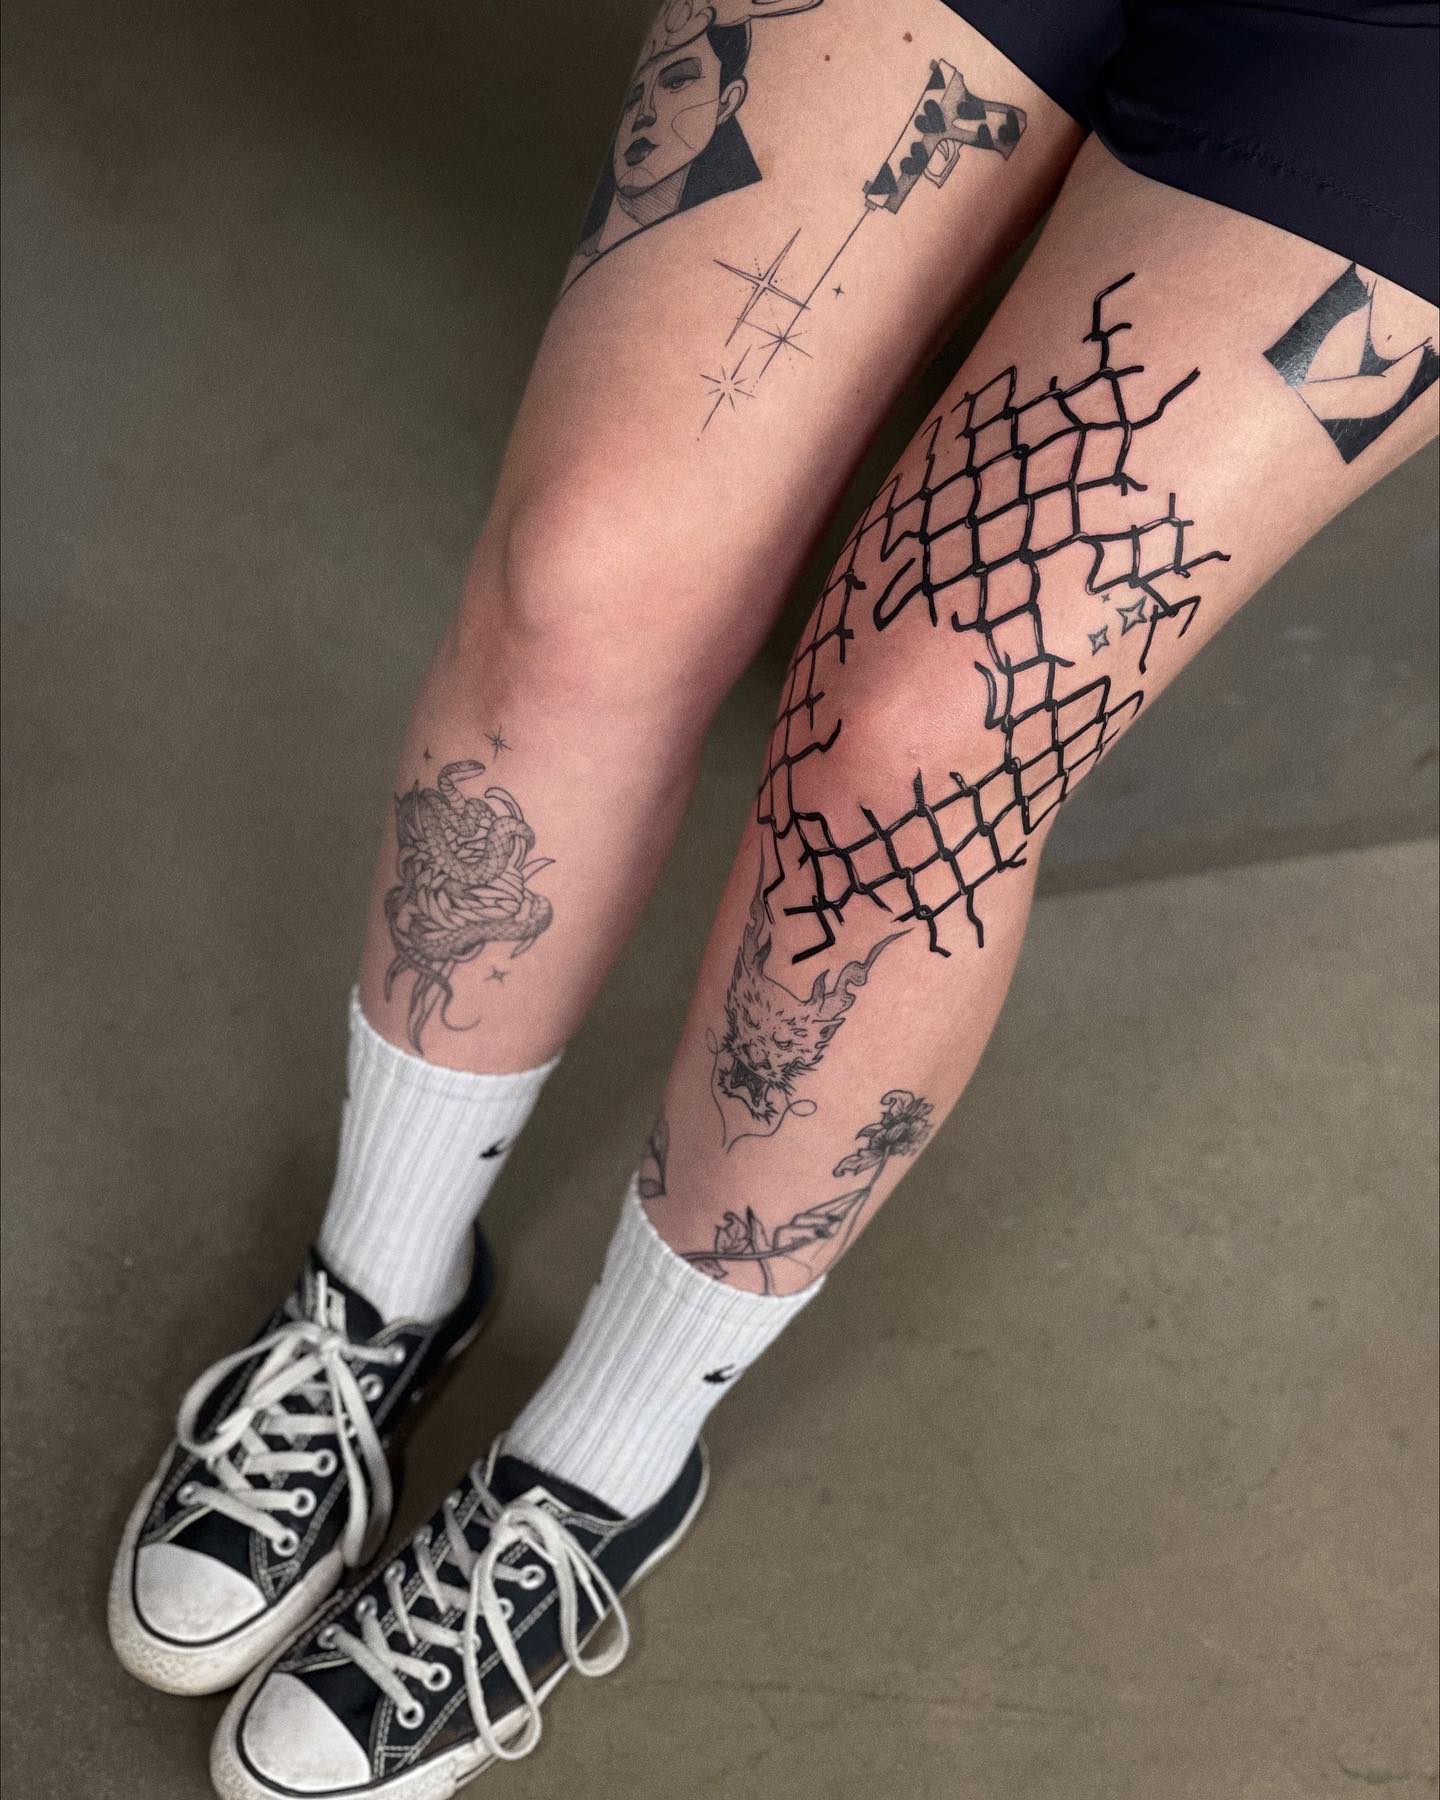 Grande y ruidoso Tatuaje de rodilla